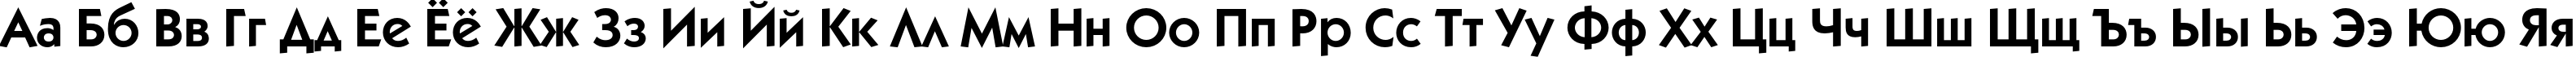 Пример написания русского алфавита шрифтом KabelC Book Bold